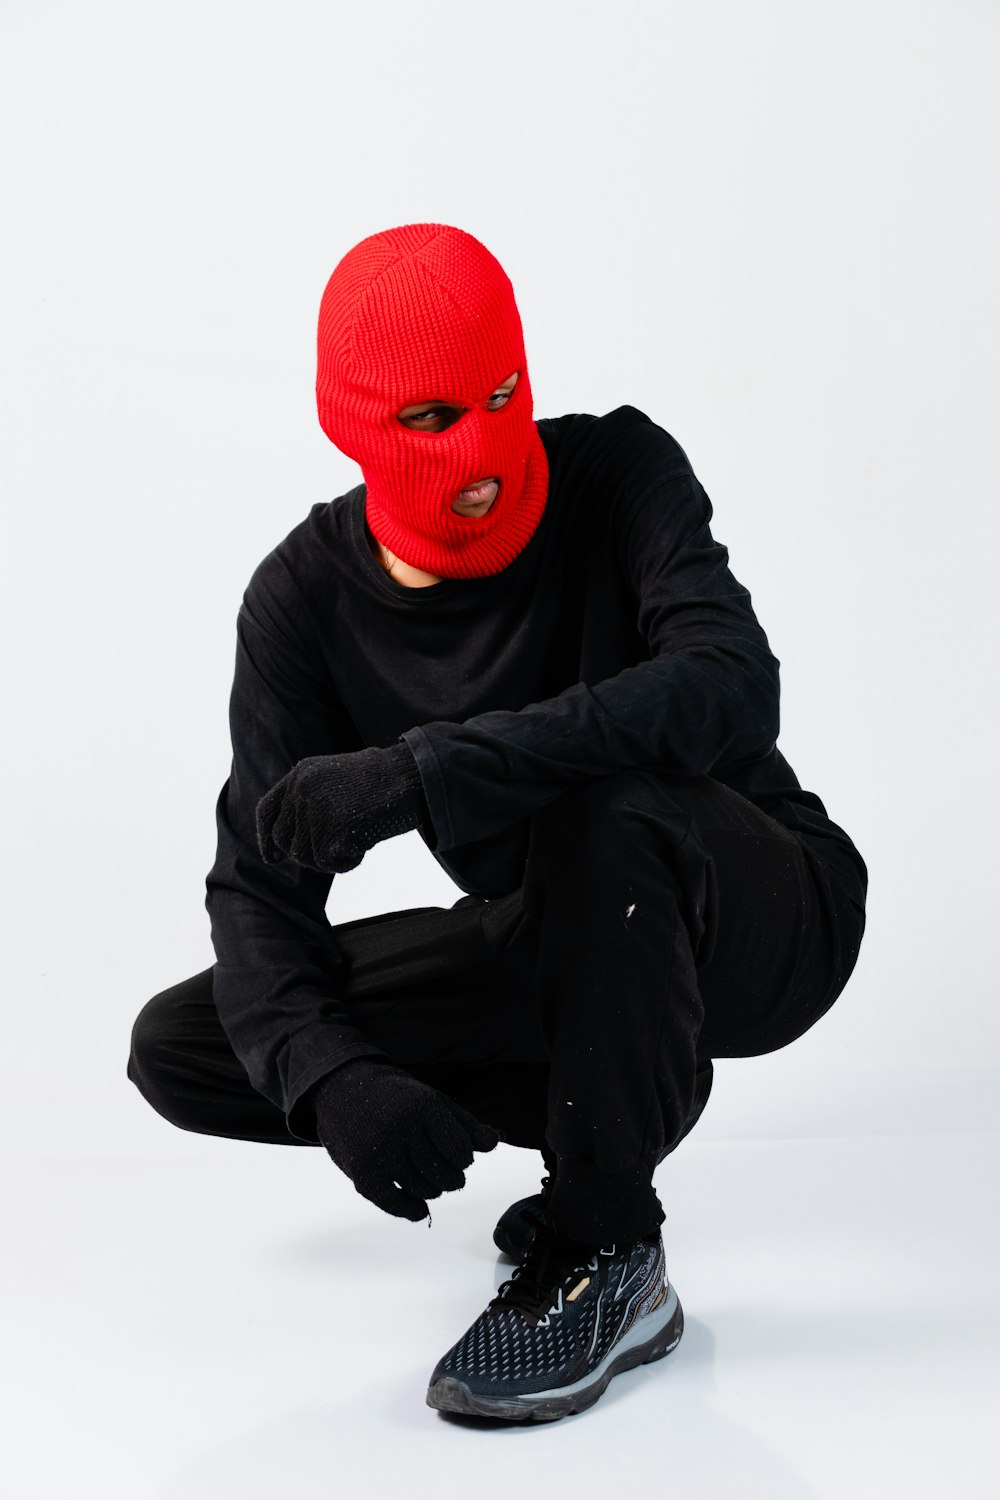 um homem em uma máscara vermelha agachada em um fundo branco